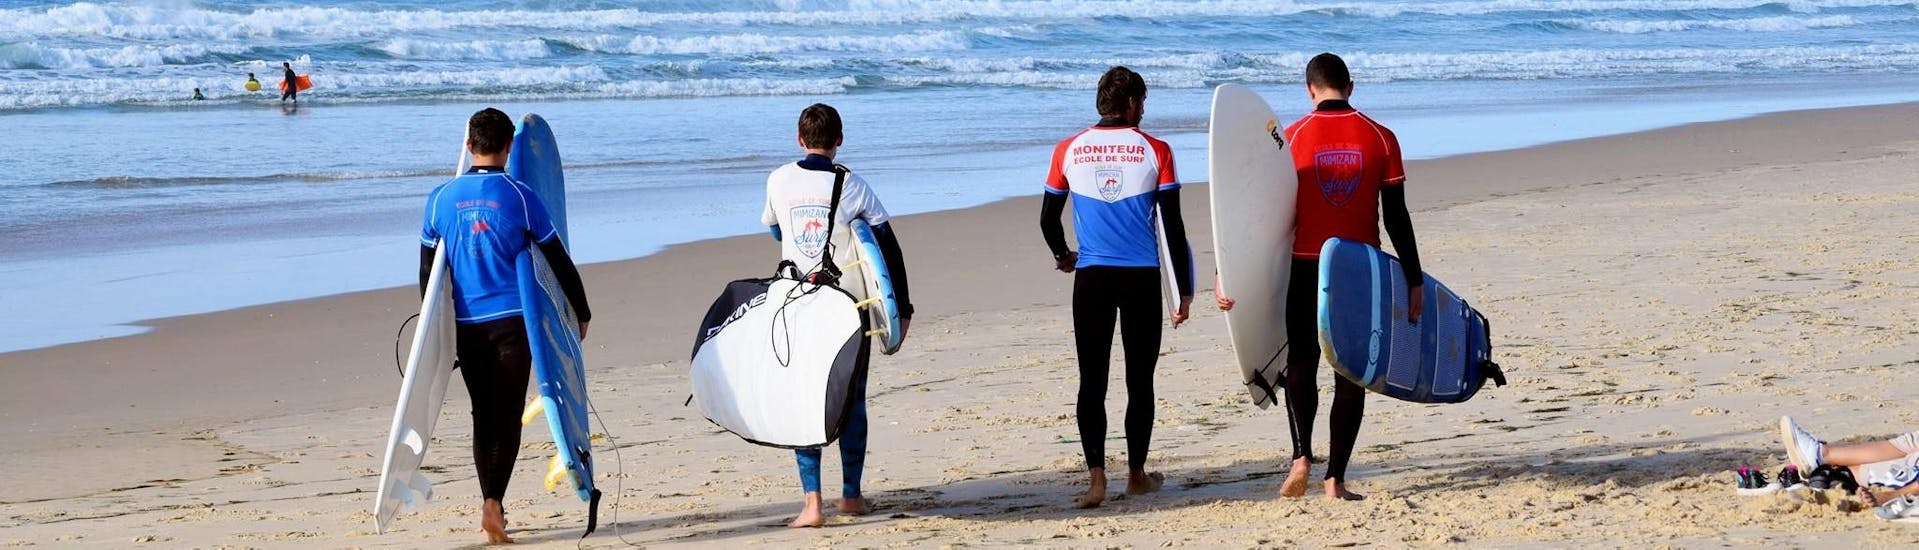 Lezioni di surf a Mimizan da 7 anni per tutti i livelli.